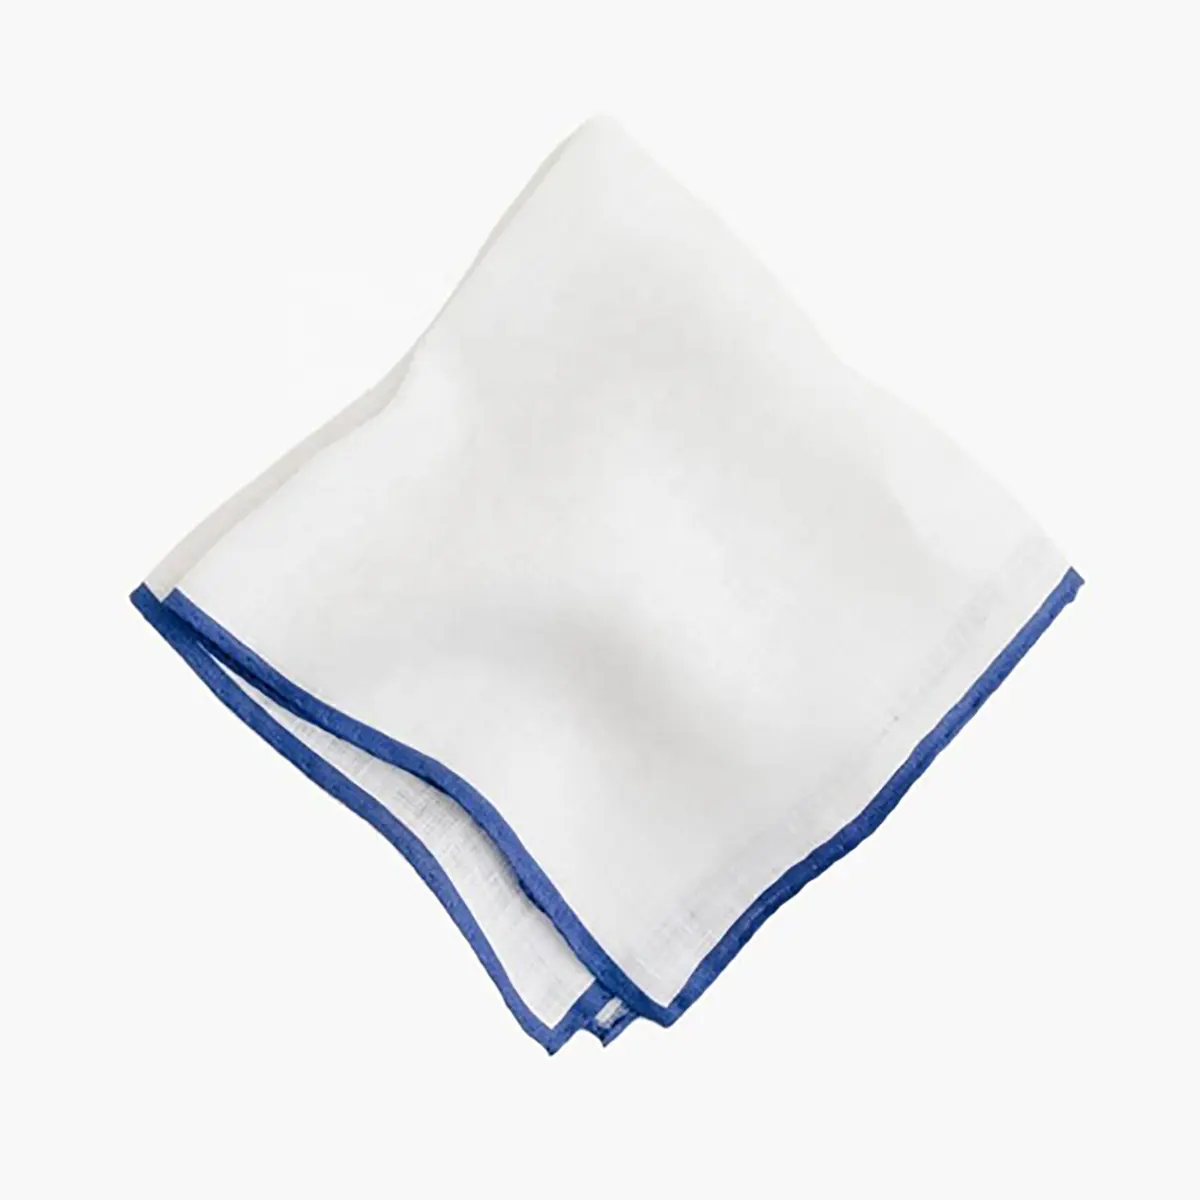 Regalo di nozze moda Casual stampa personalizzata colore diverso Trim fazzoletto bianco arrotolato a mano Ramie lino bordo tasca quadrata